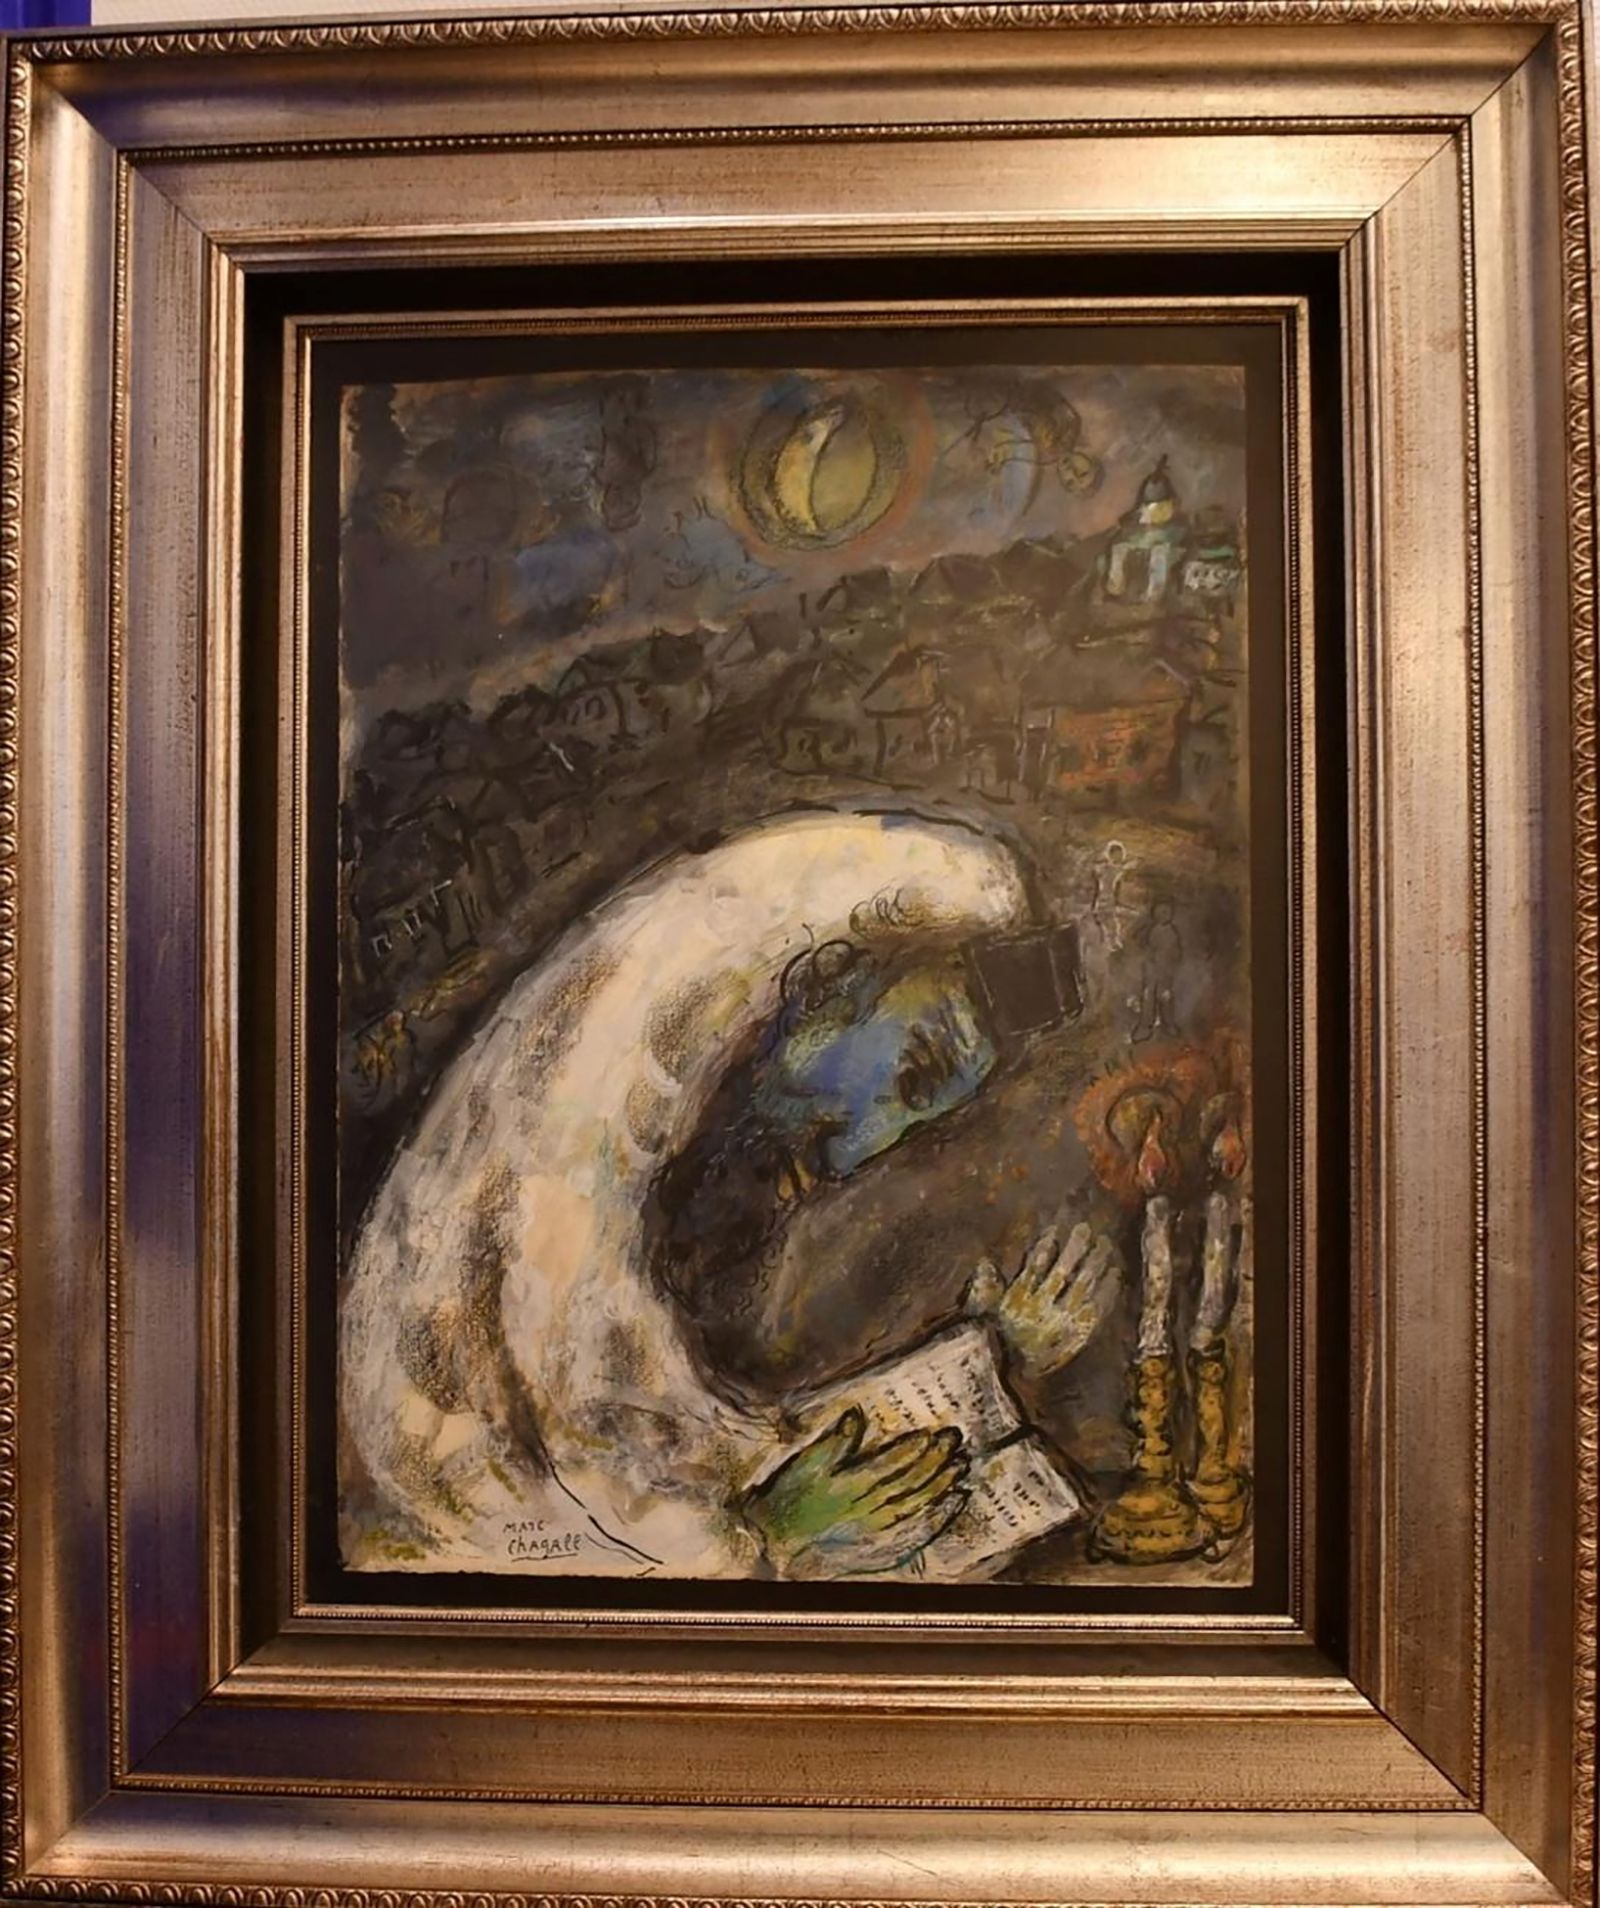 Арван дөрвөн жилийн өмнө Израйлаас хулгайлж, Бельгид олдсон Марк Шагалын "L'homme en priere" зургийг энэхүү огноогүй тараах материалаас харж болно.  Паркет of Намур/Тараах материал REUTERS-ээр ЭНЭ ЗУРГИЙГ ГУРАВДАГЧ ТАЛААС НИЙЛҮҮЛСЭН.  ДАХИН ХУДАЛДАА ҮГҮЙ.  АРХИВ БАЙХГҮЙ